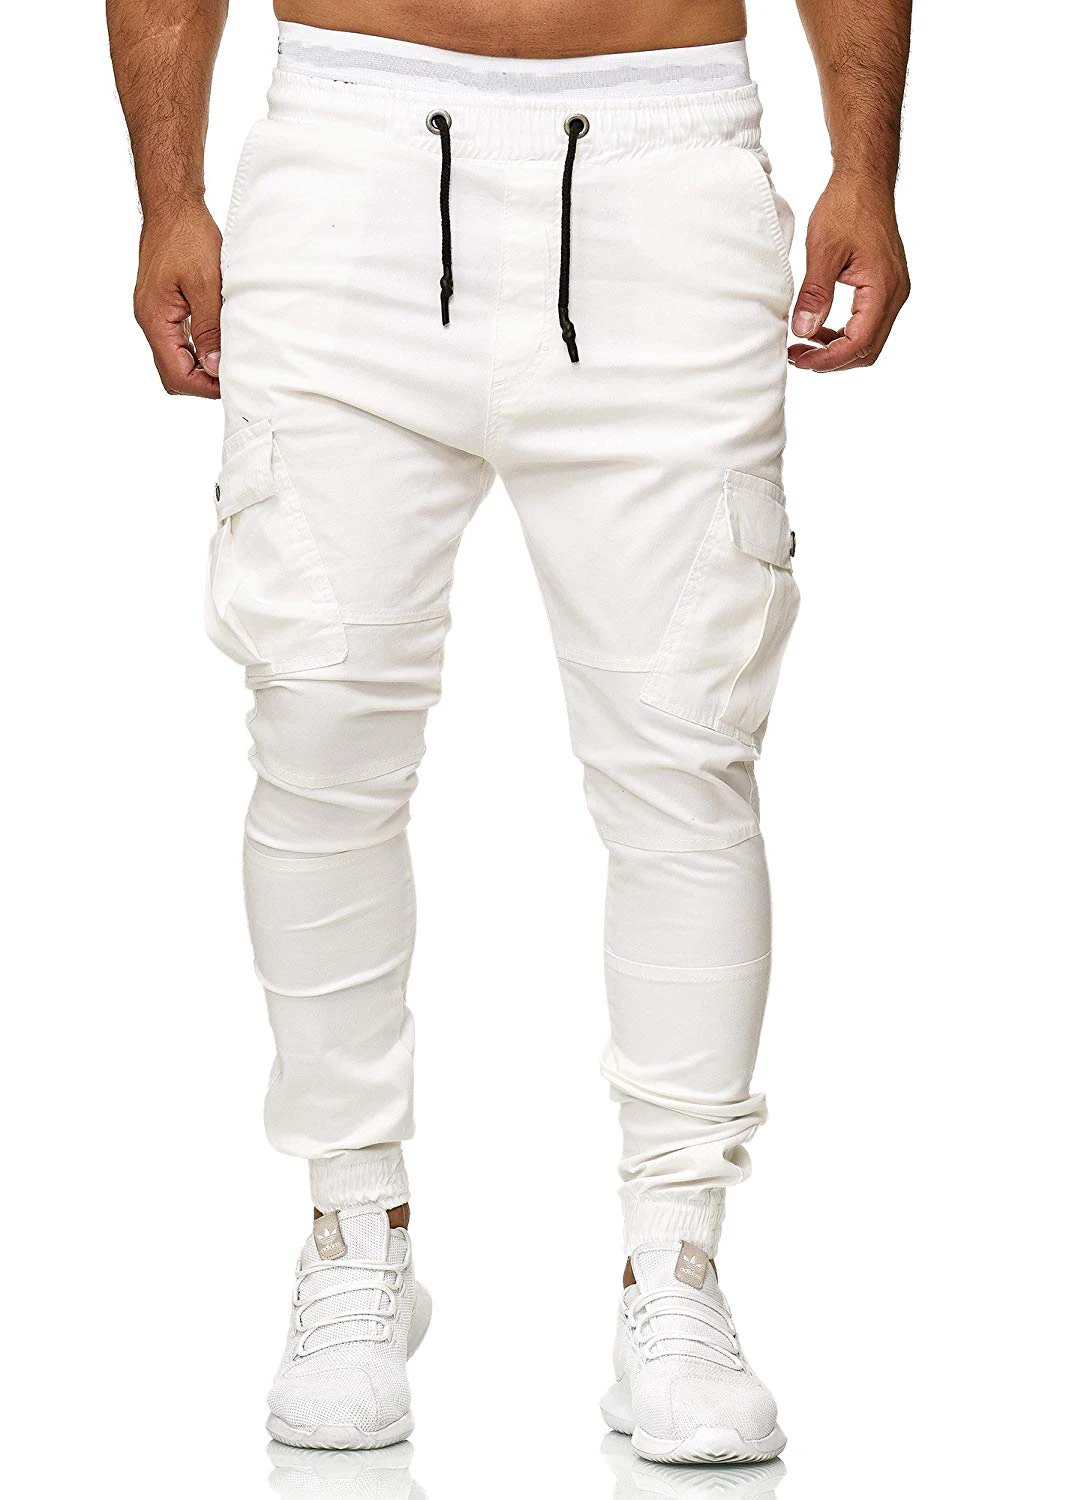 Брюки 2018 новые Брендовые мужские прямые брюки облегающие городские повседневные узкие карманы длинные штаны с накладными карманами